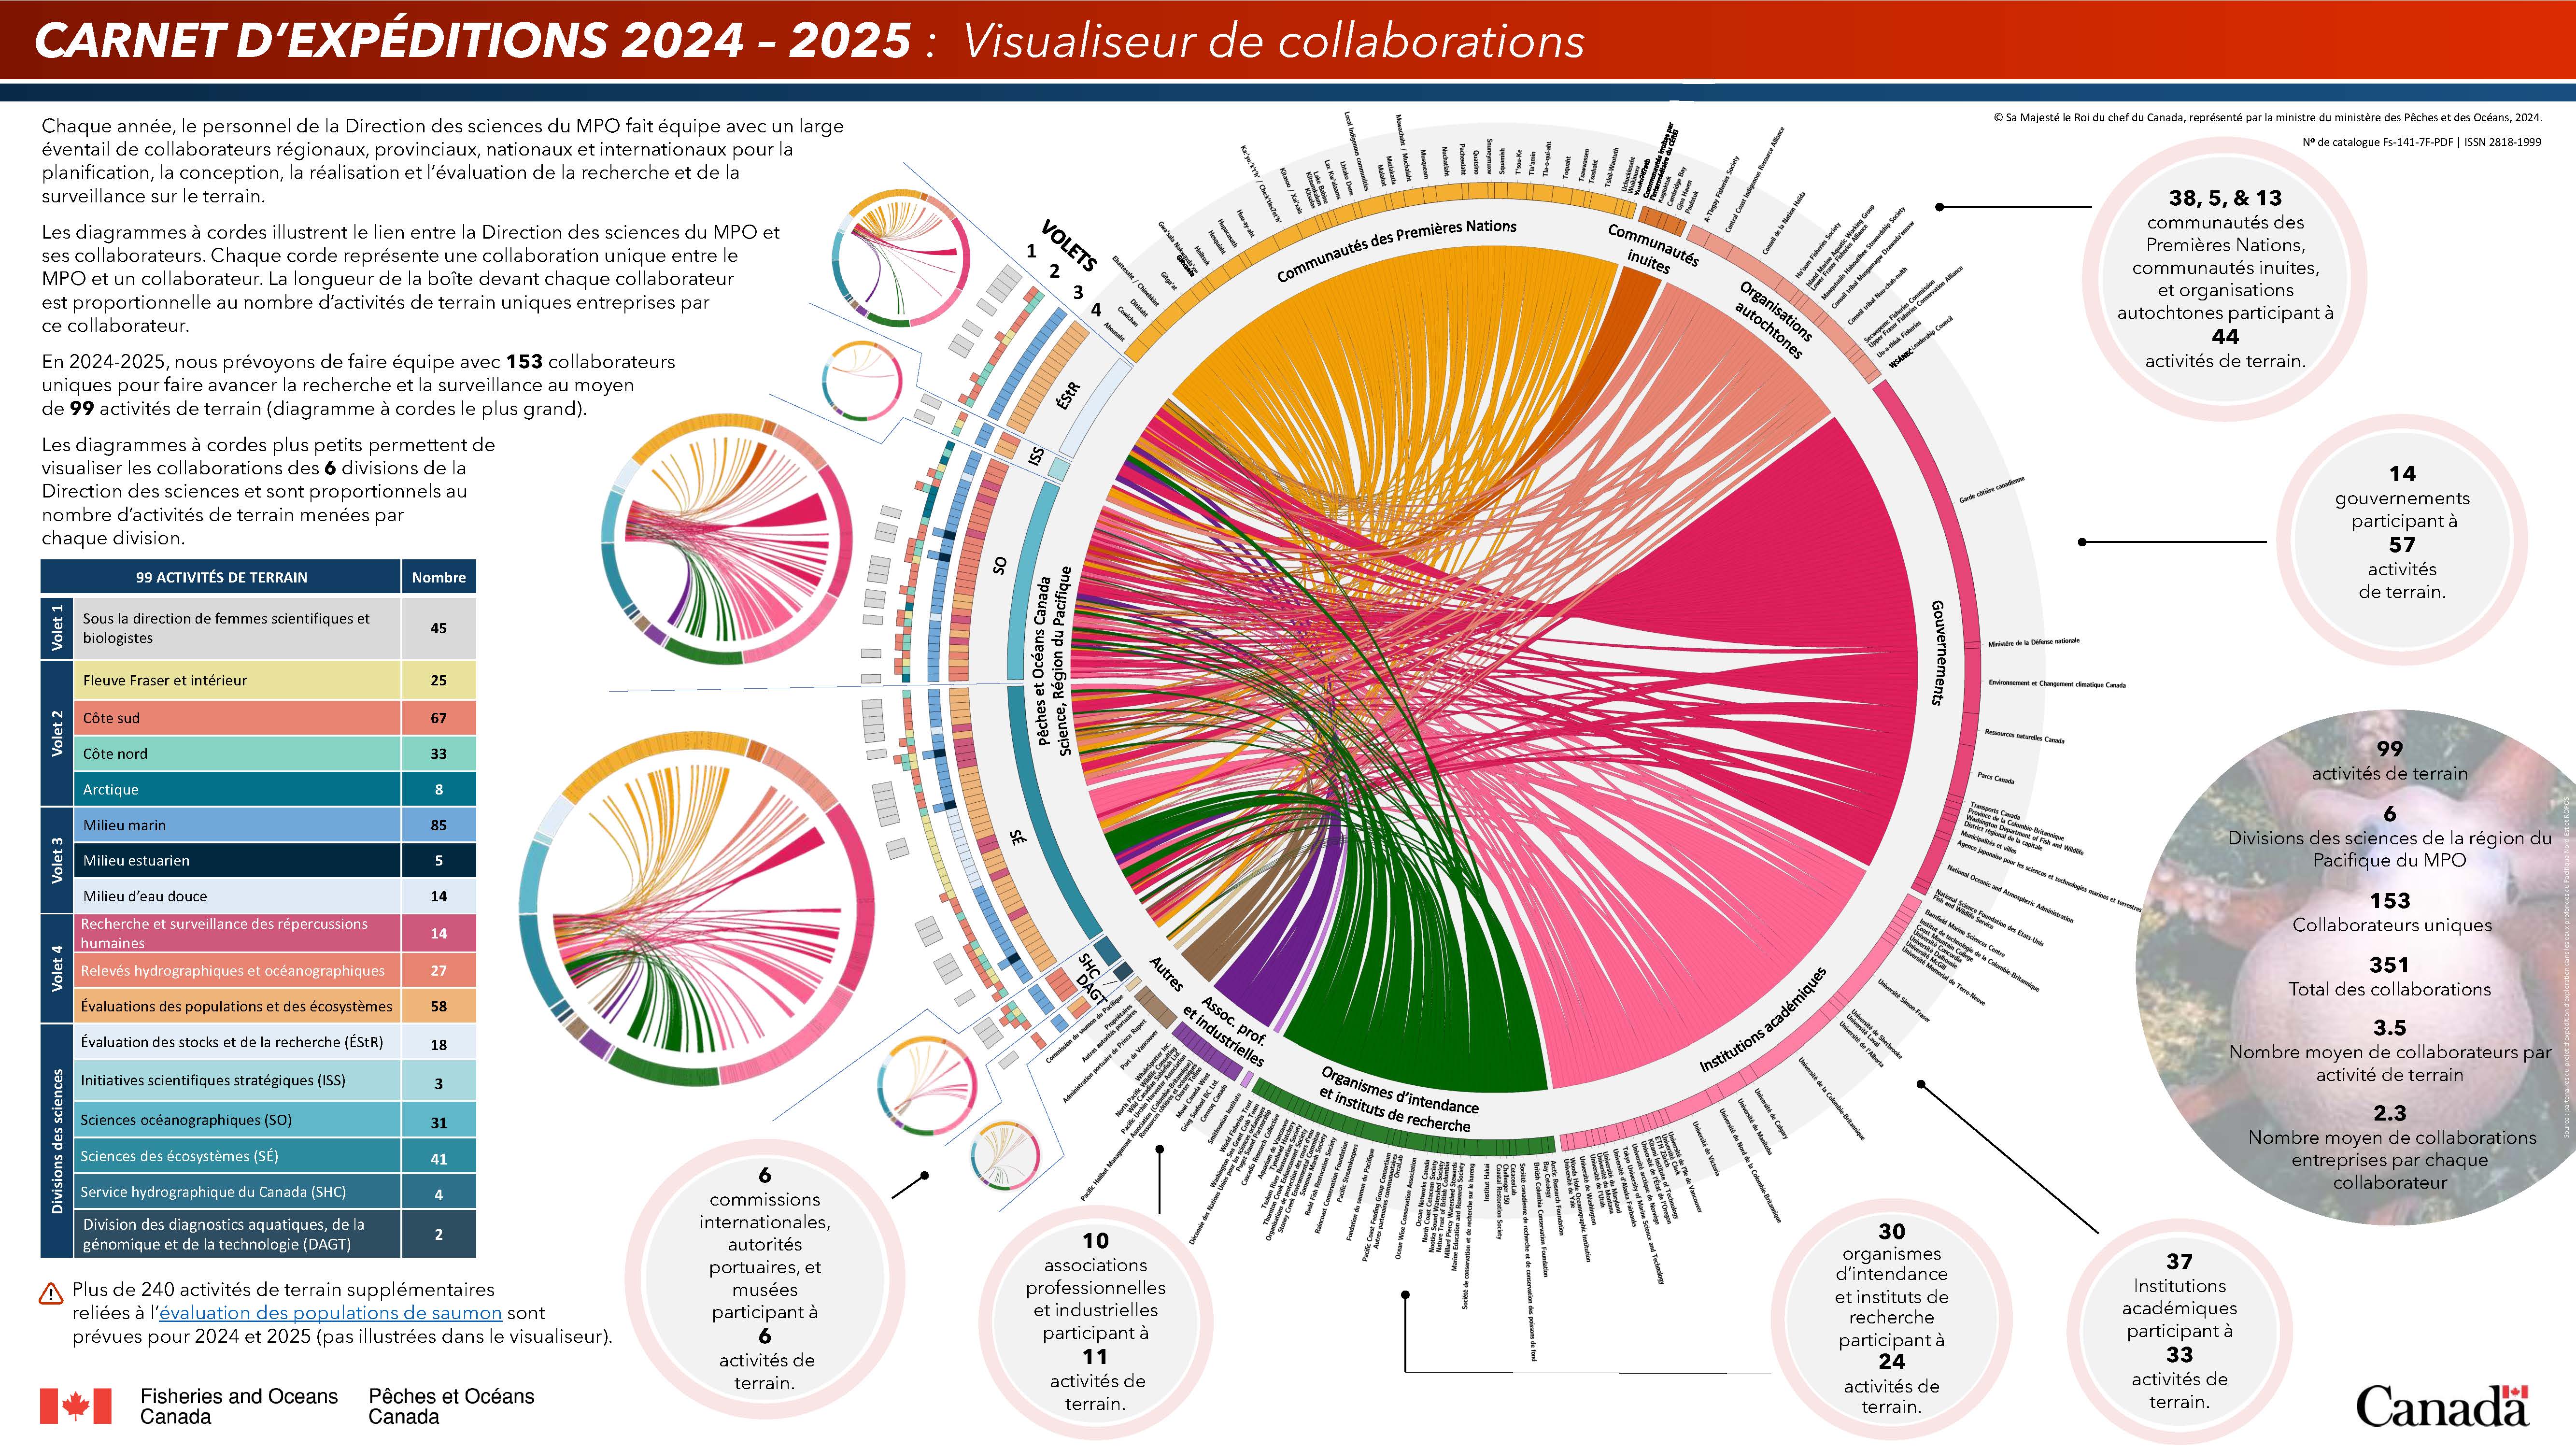 Infographic: Carnet d’expéditions 2024 à 2025 : Visualiseur de collaborations